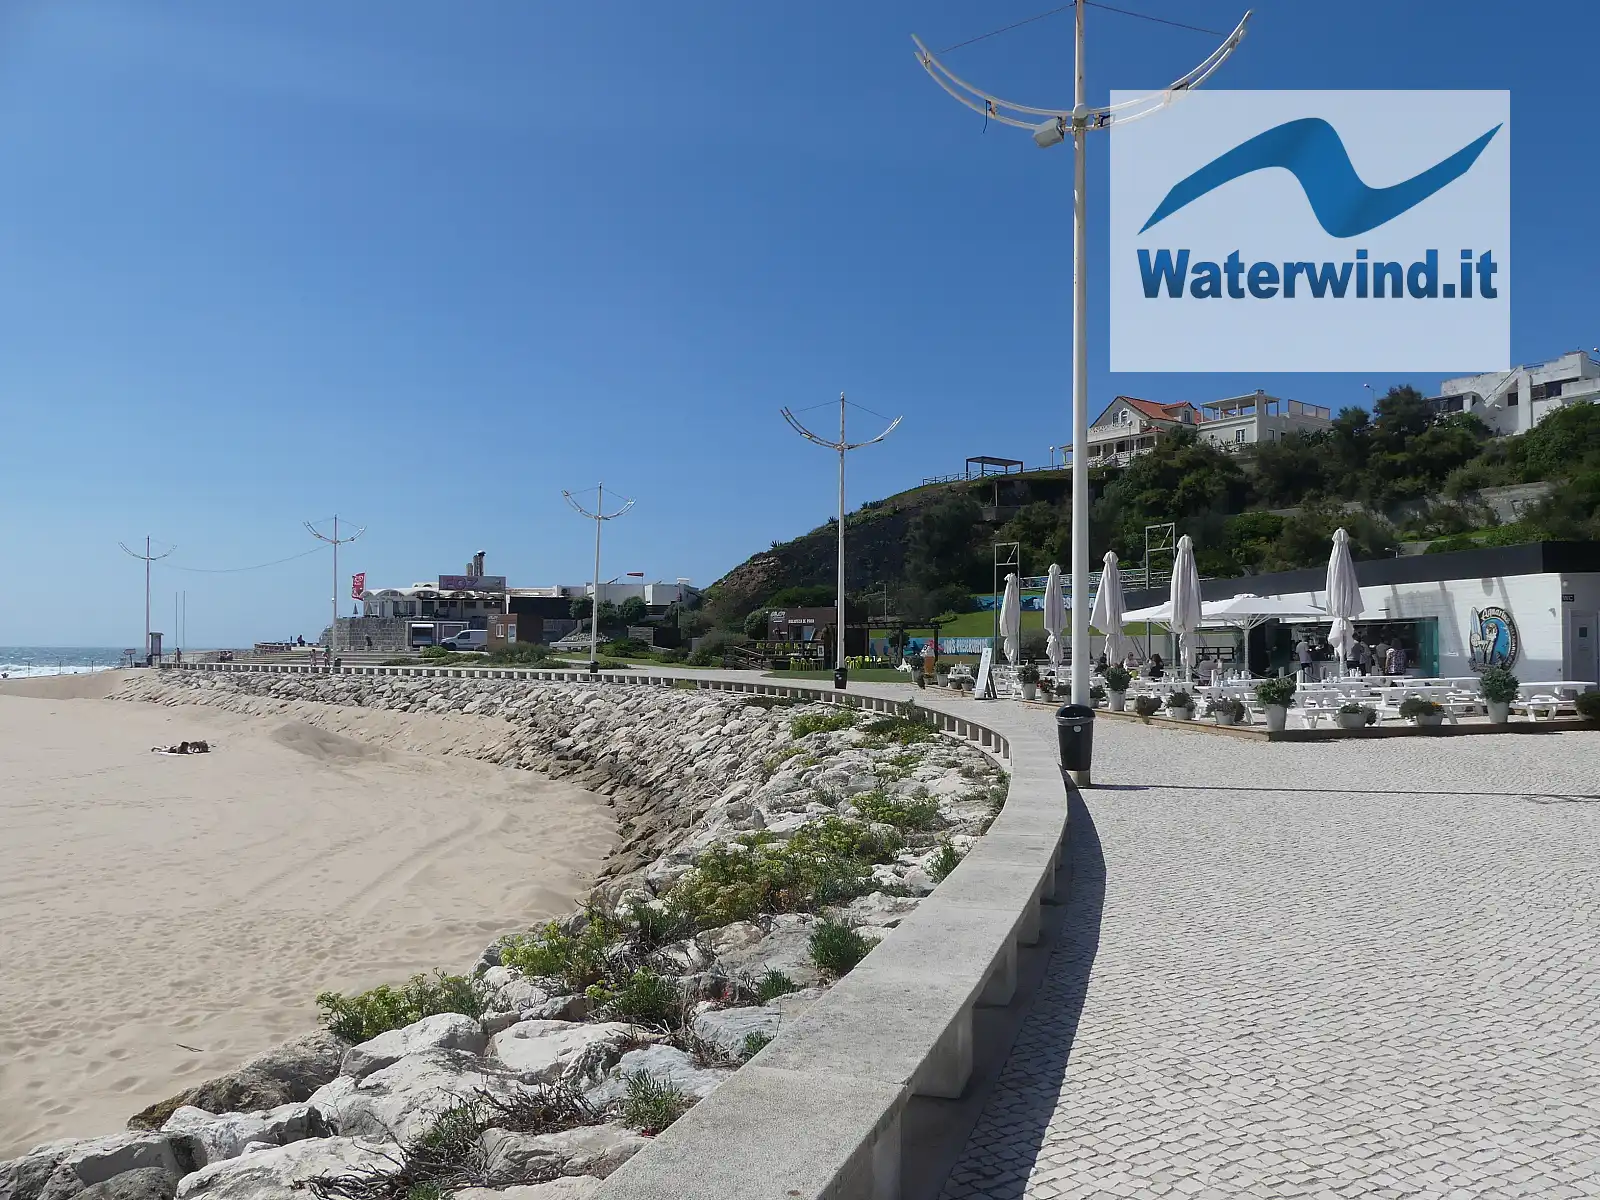 Praia de Areia Branca, Lourinha - Galizia - Portogallo